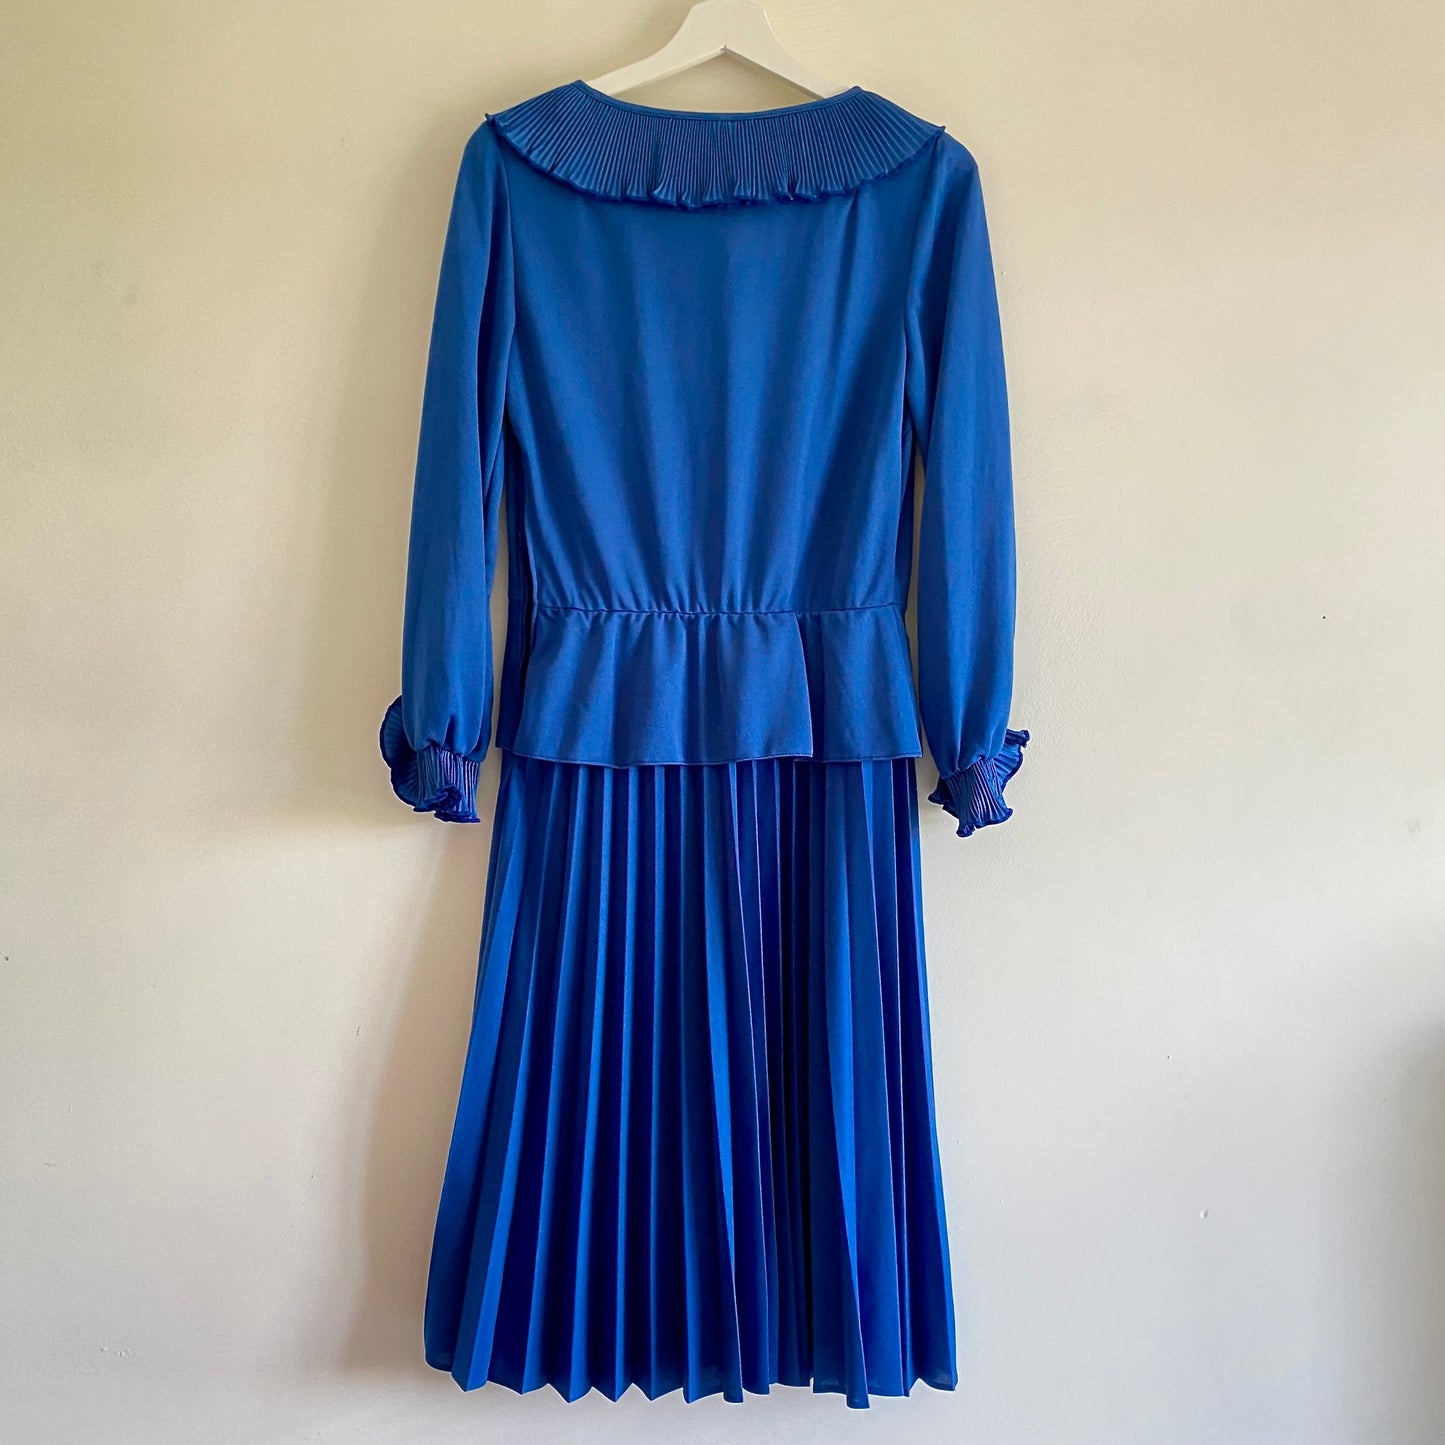 Blue Midi Dress was £38